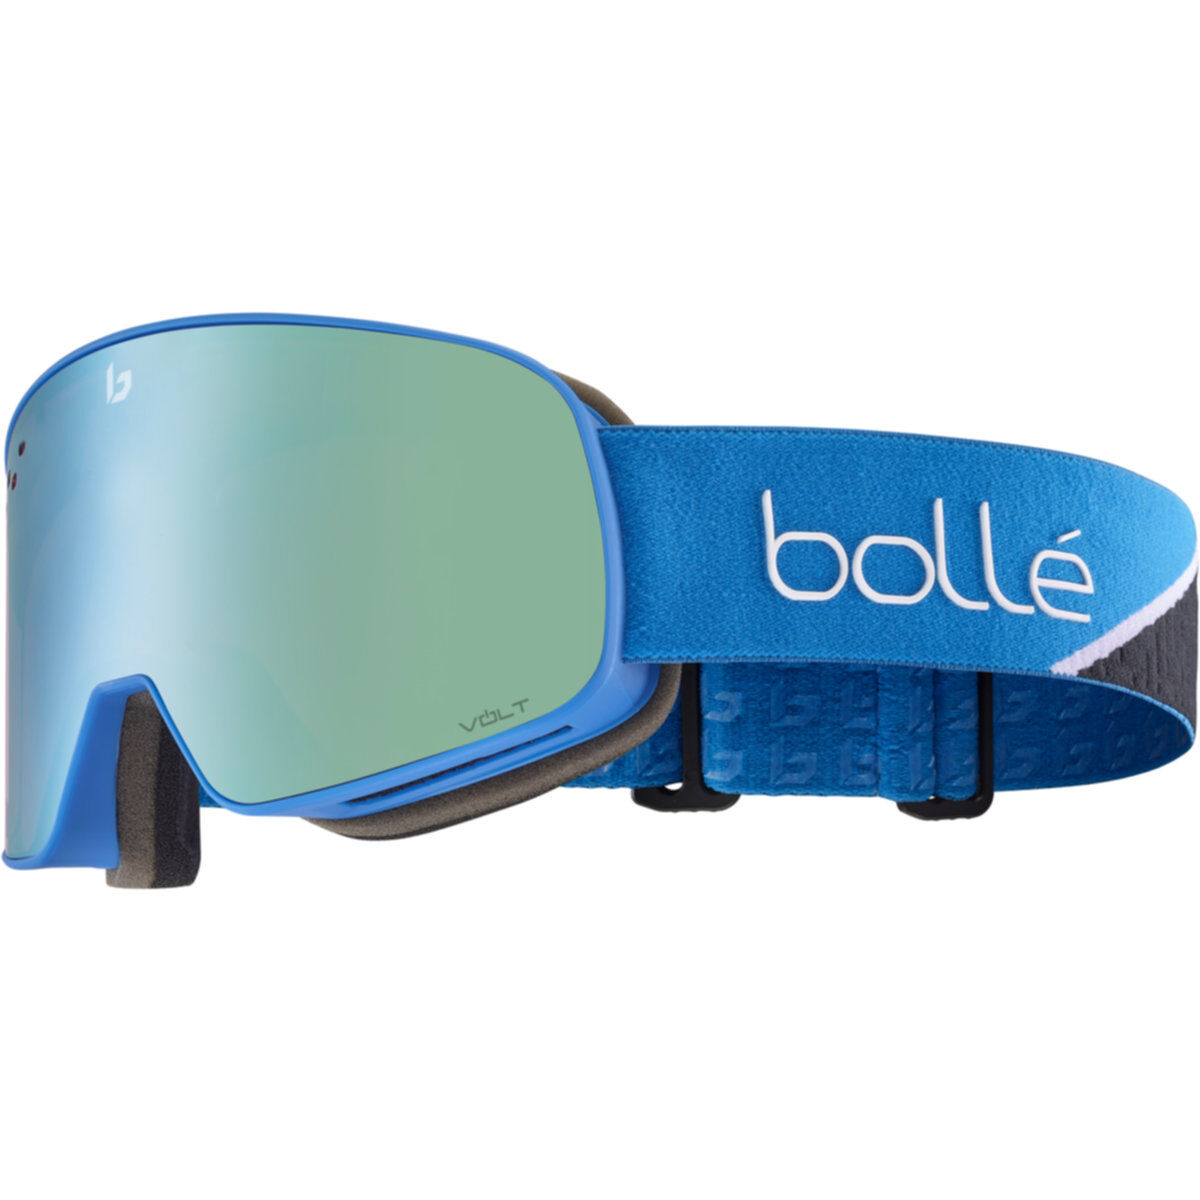 Outlet - Goggles | Bollé